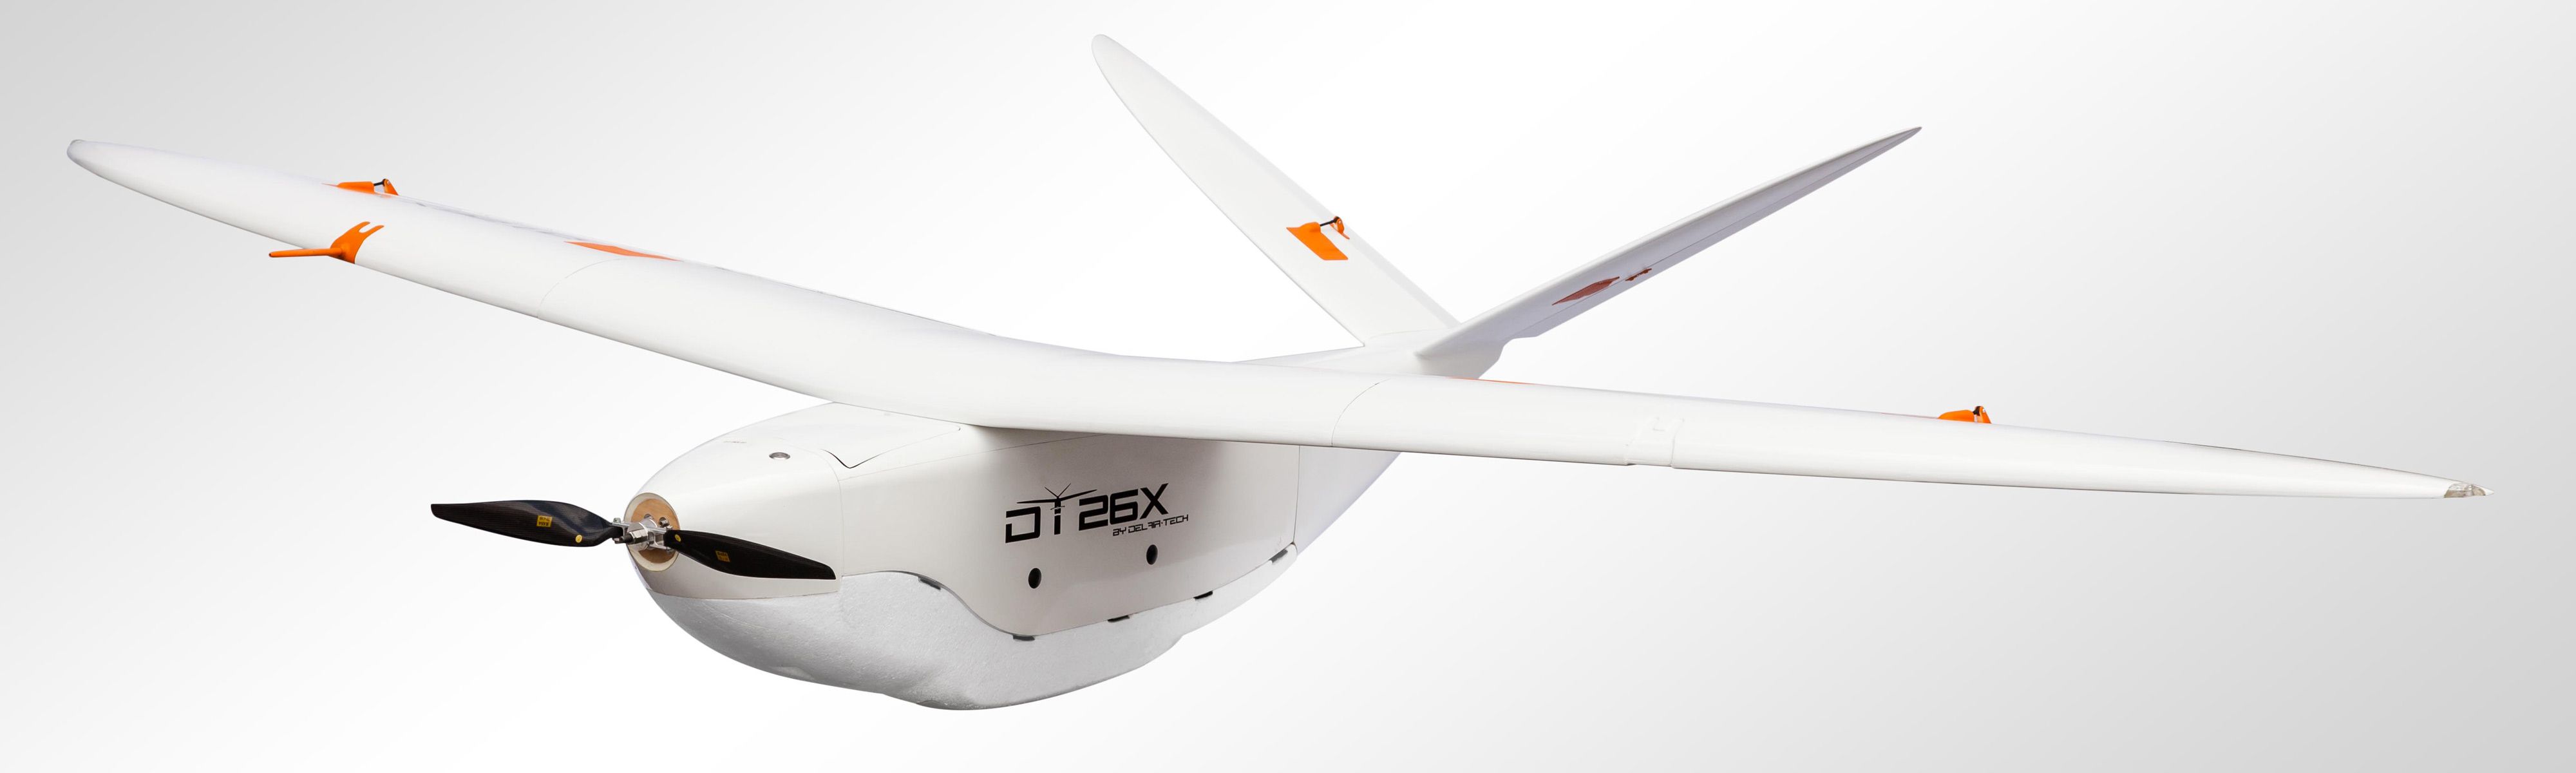 Delair-Tech long range UAV DT26X